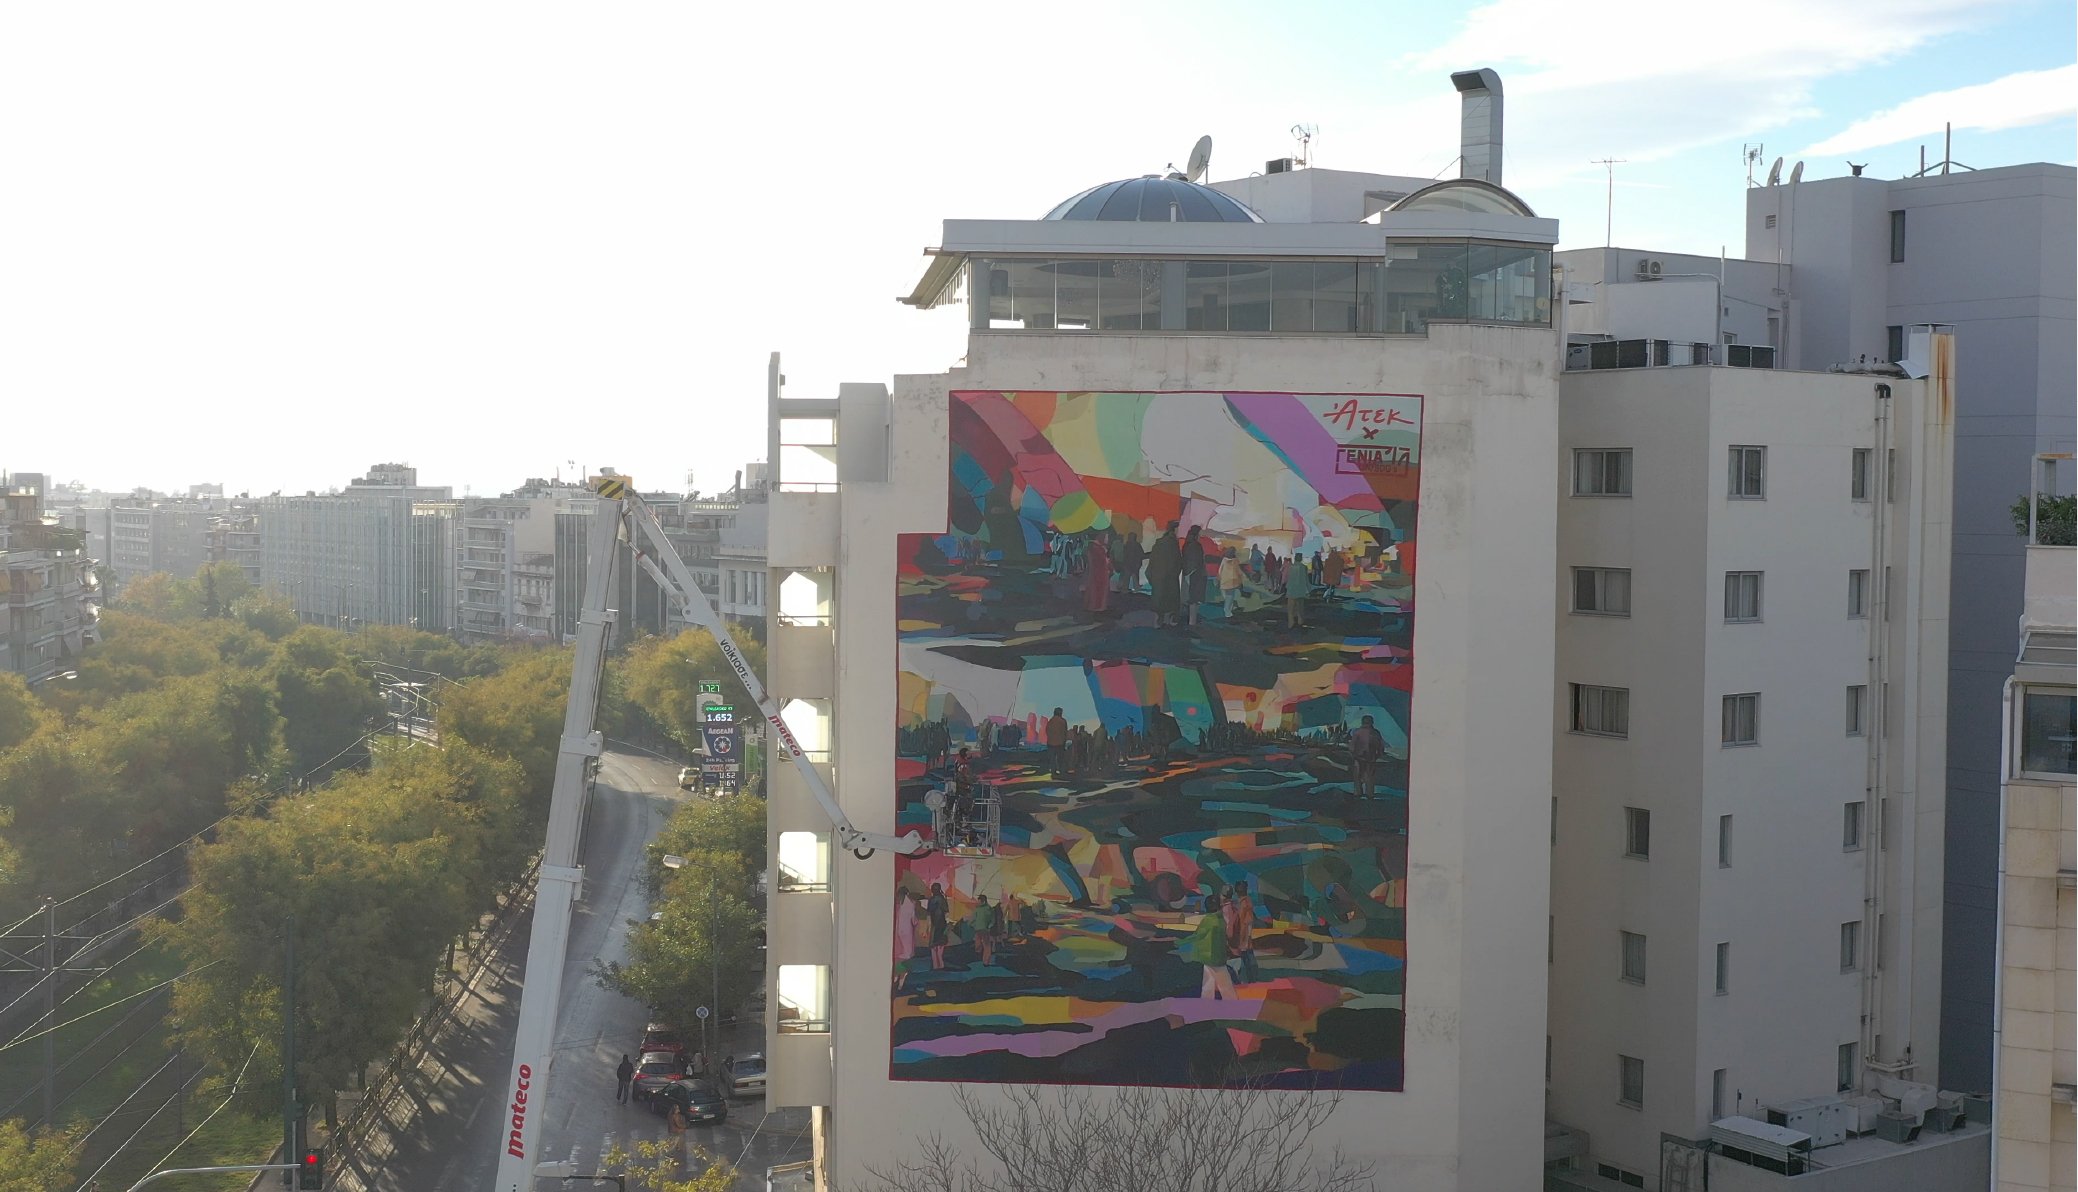 Νέα εντυπωσιακή τοιχογραφία στο κέντρο της Αθήνας – Ποιος βρίσκεται πίσω από το γκράφιτι